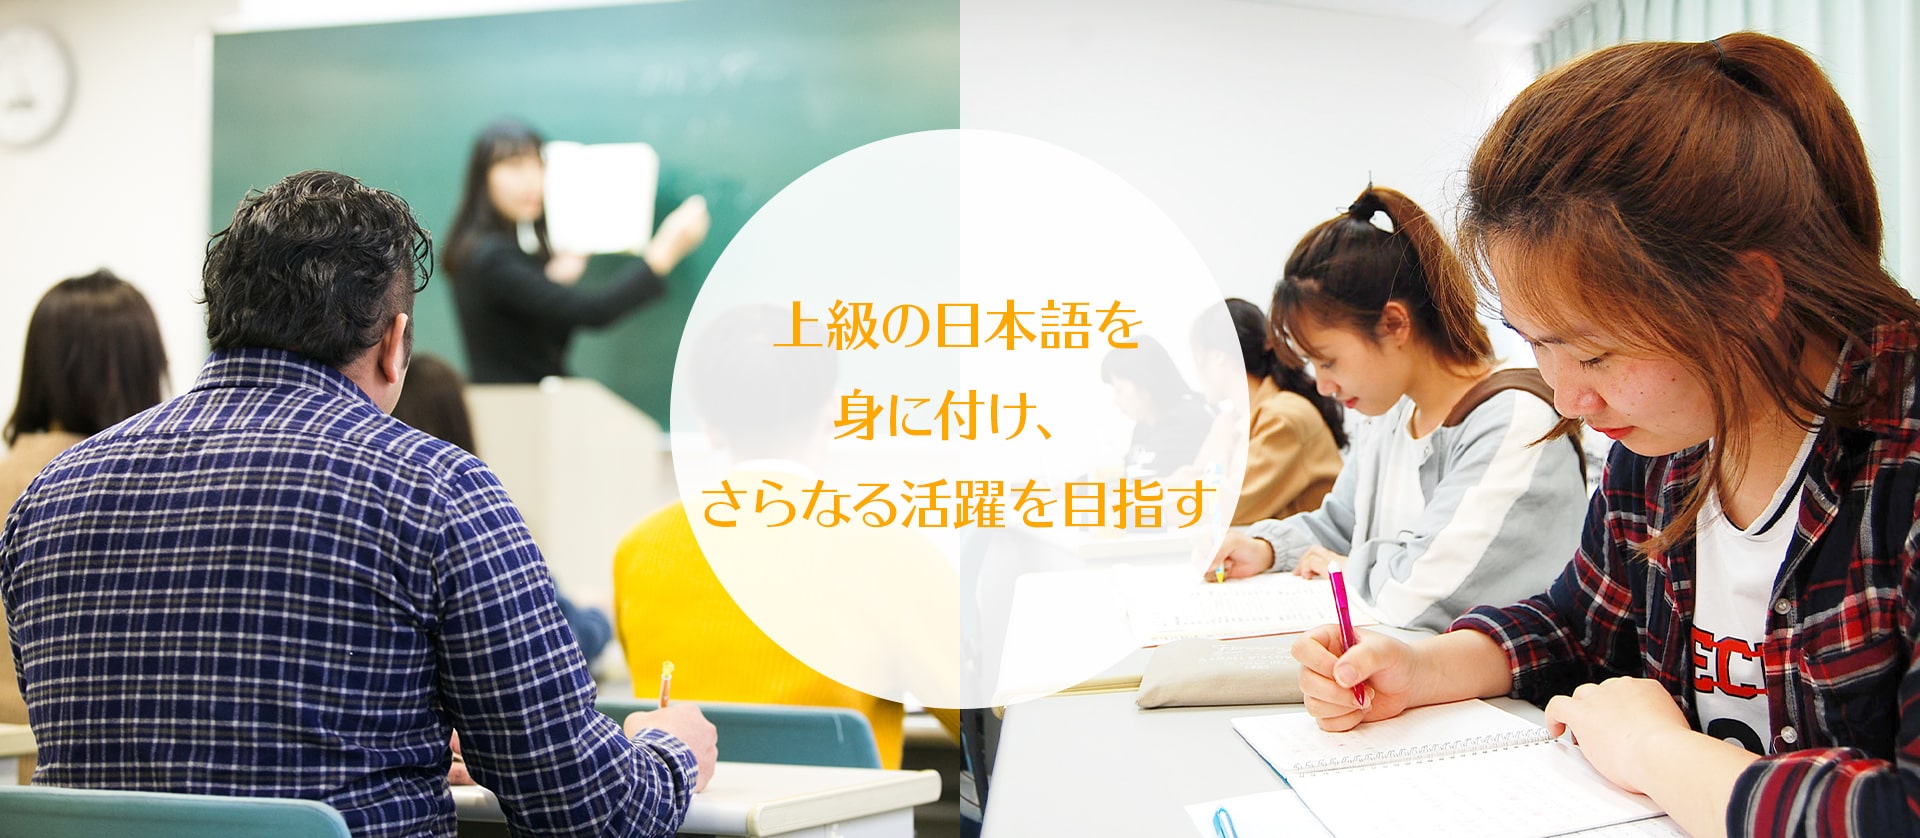 上級の日本語を身に付け、さらなる活躍を目指す